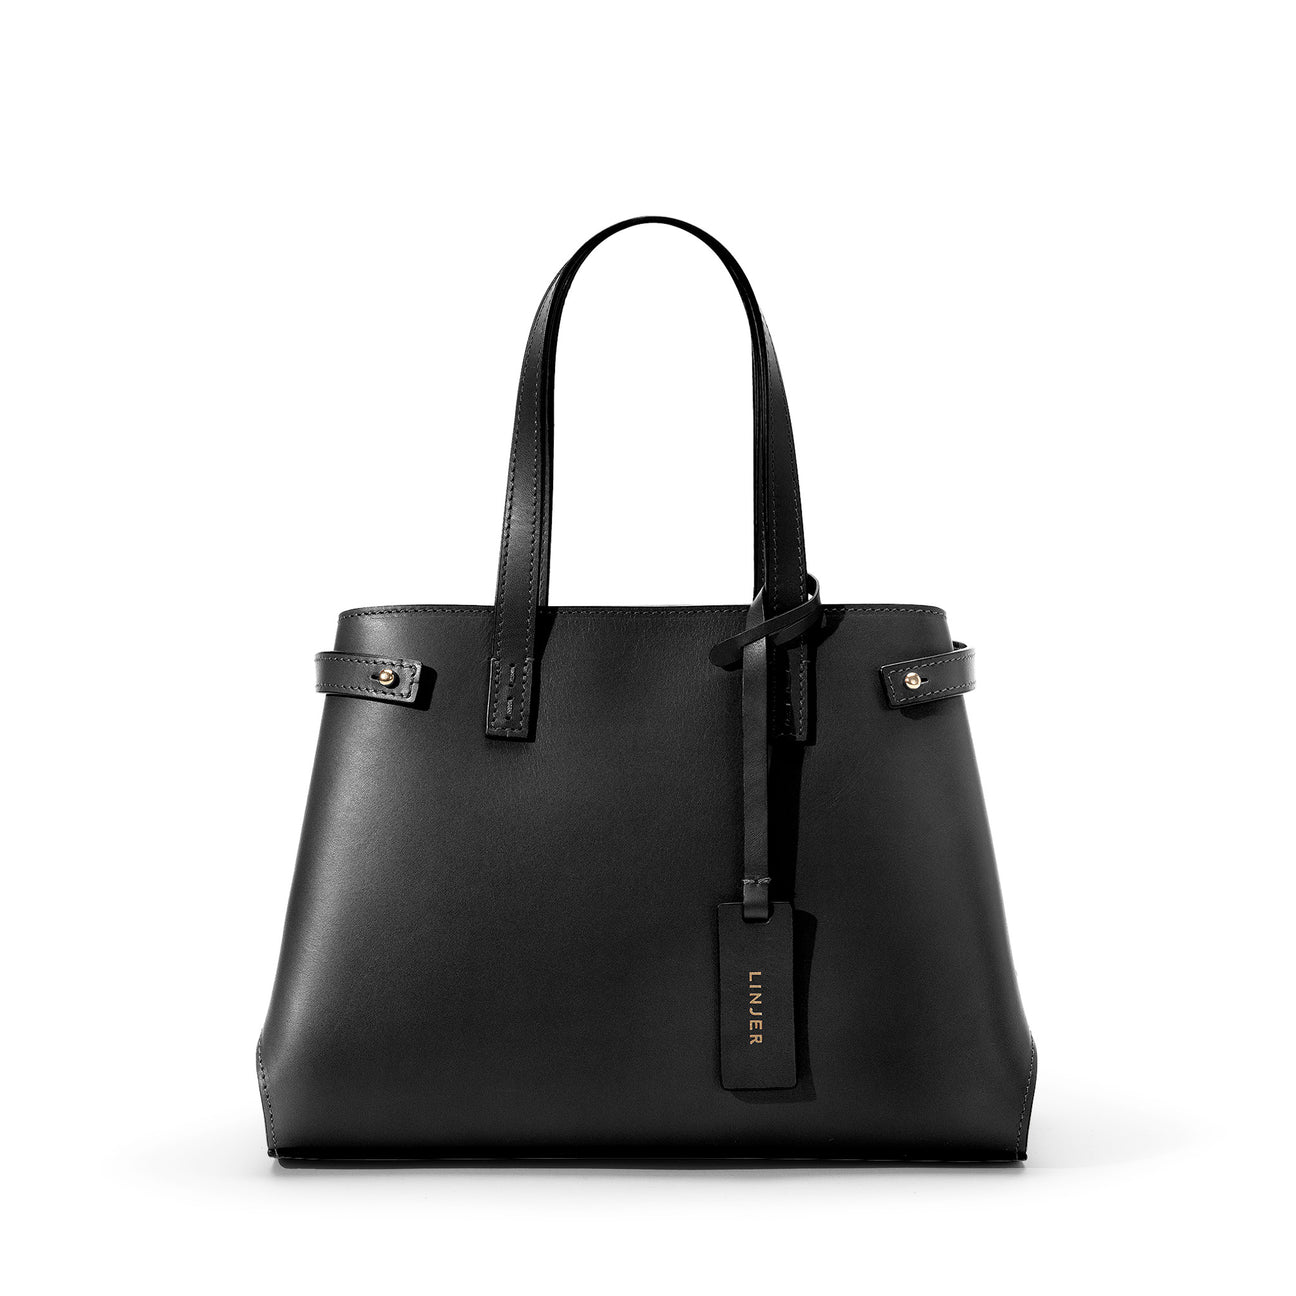 The Sofia Bag - Black/Red | Linjer Handbags